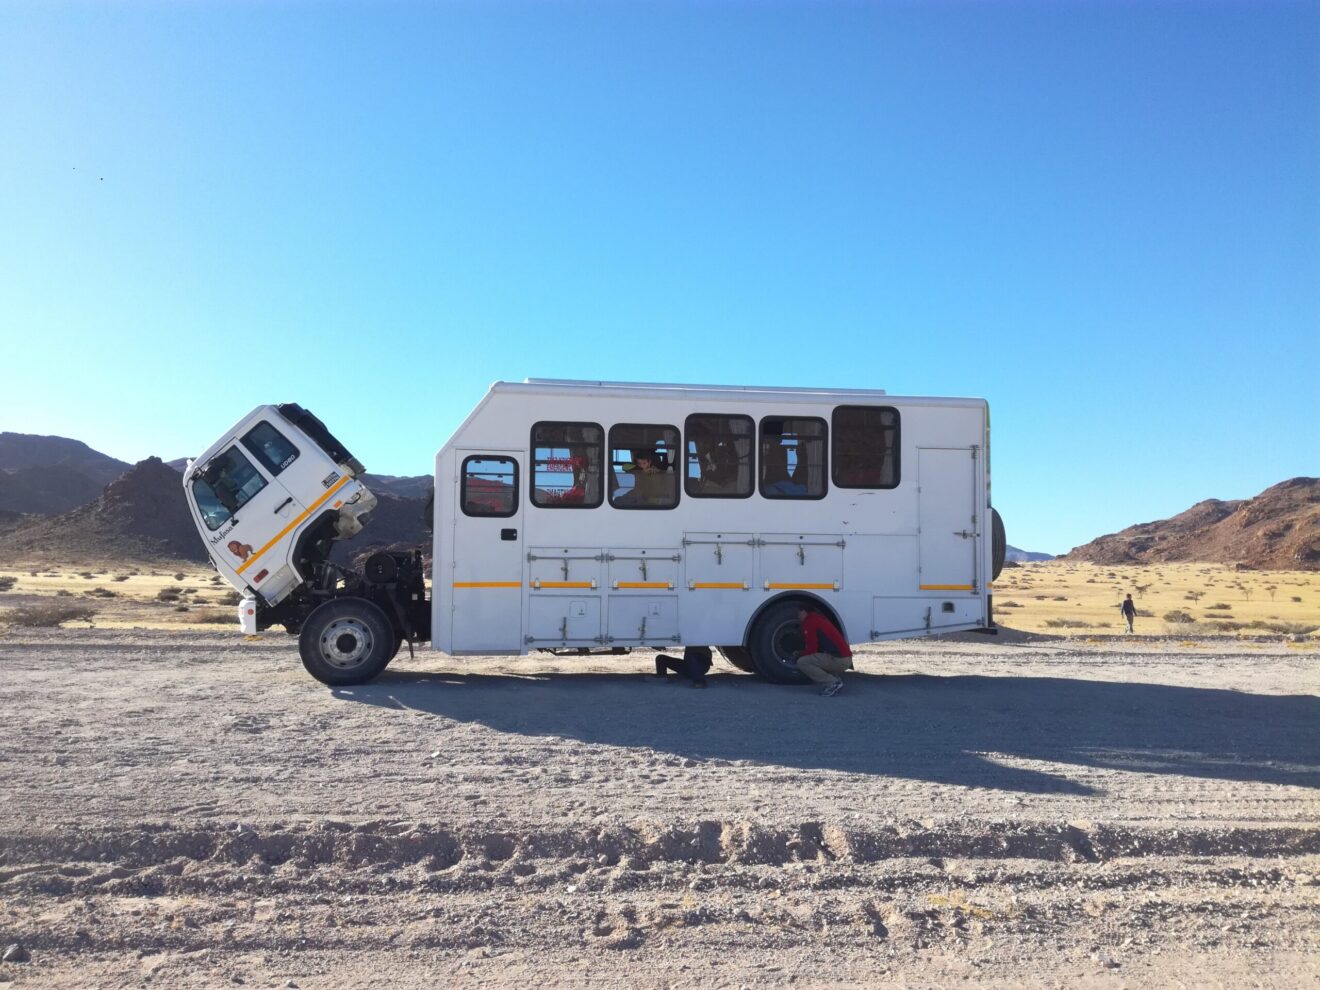 Scopri di più sull'articolo Cosa fai quando si ferma il mezzo nel bel mezzo del deserto in Namibia?